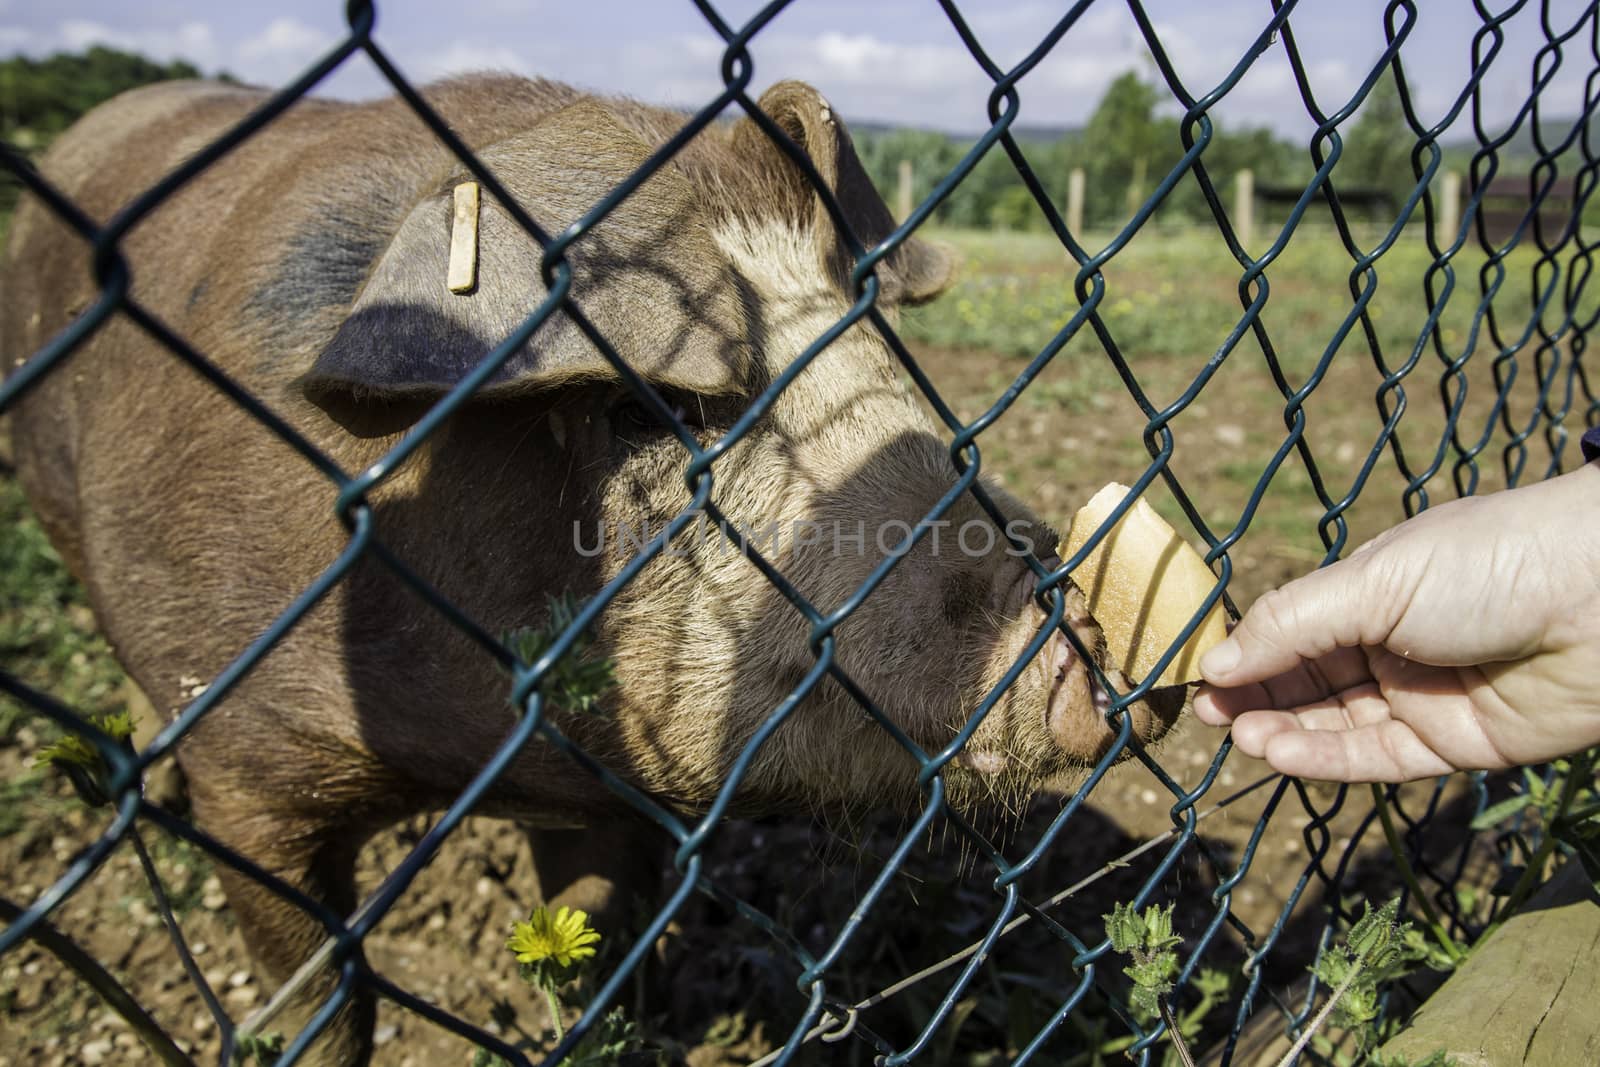 Farm pig by esebene